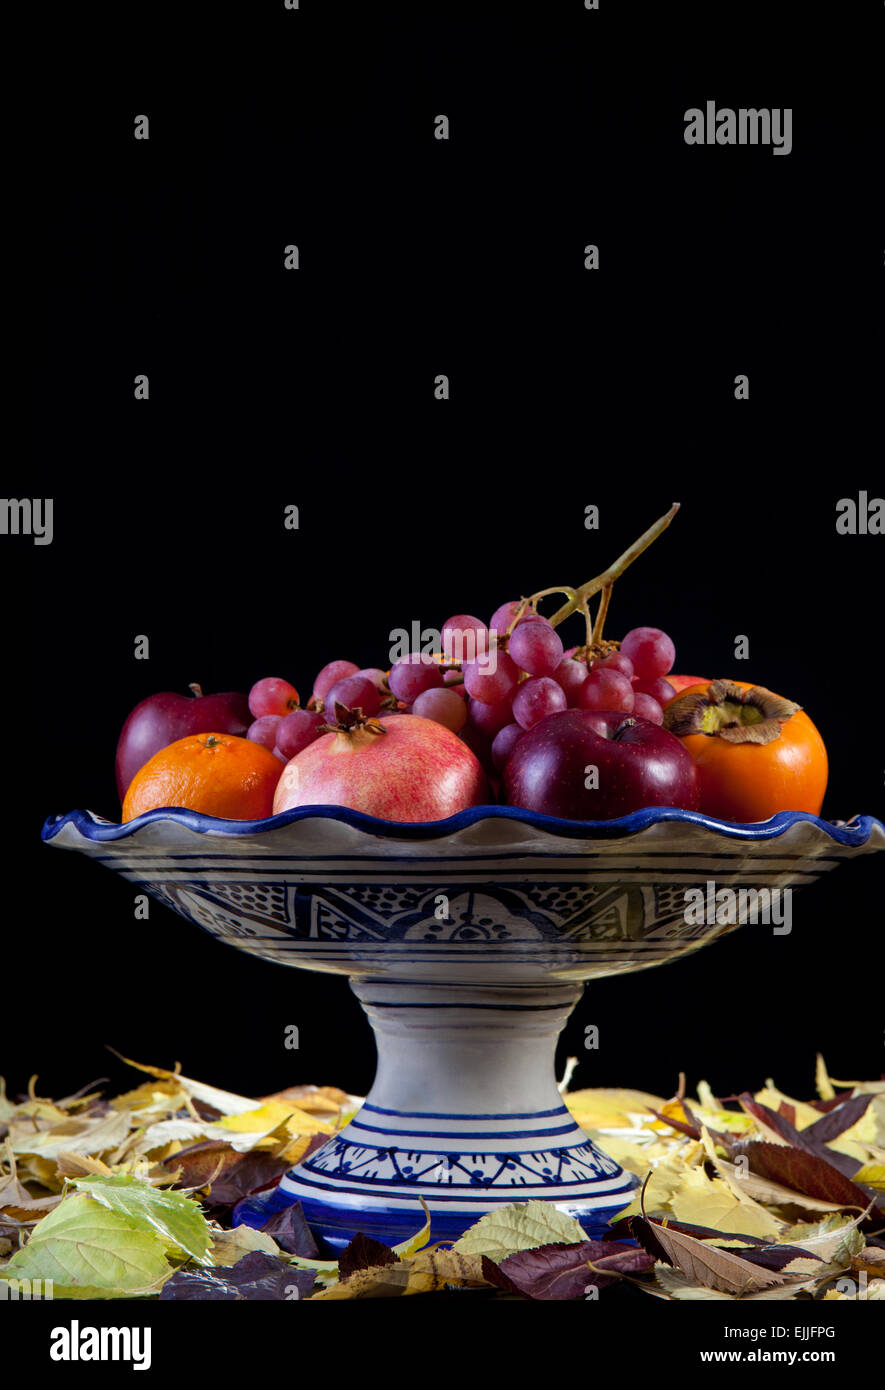 Frutero de cerámica con el otoño frutas aisladas sobre fondo negro.  Superficie lleno de hojas secas Fotografía de stock - Alamy